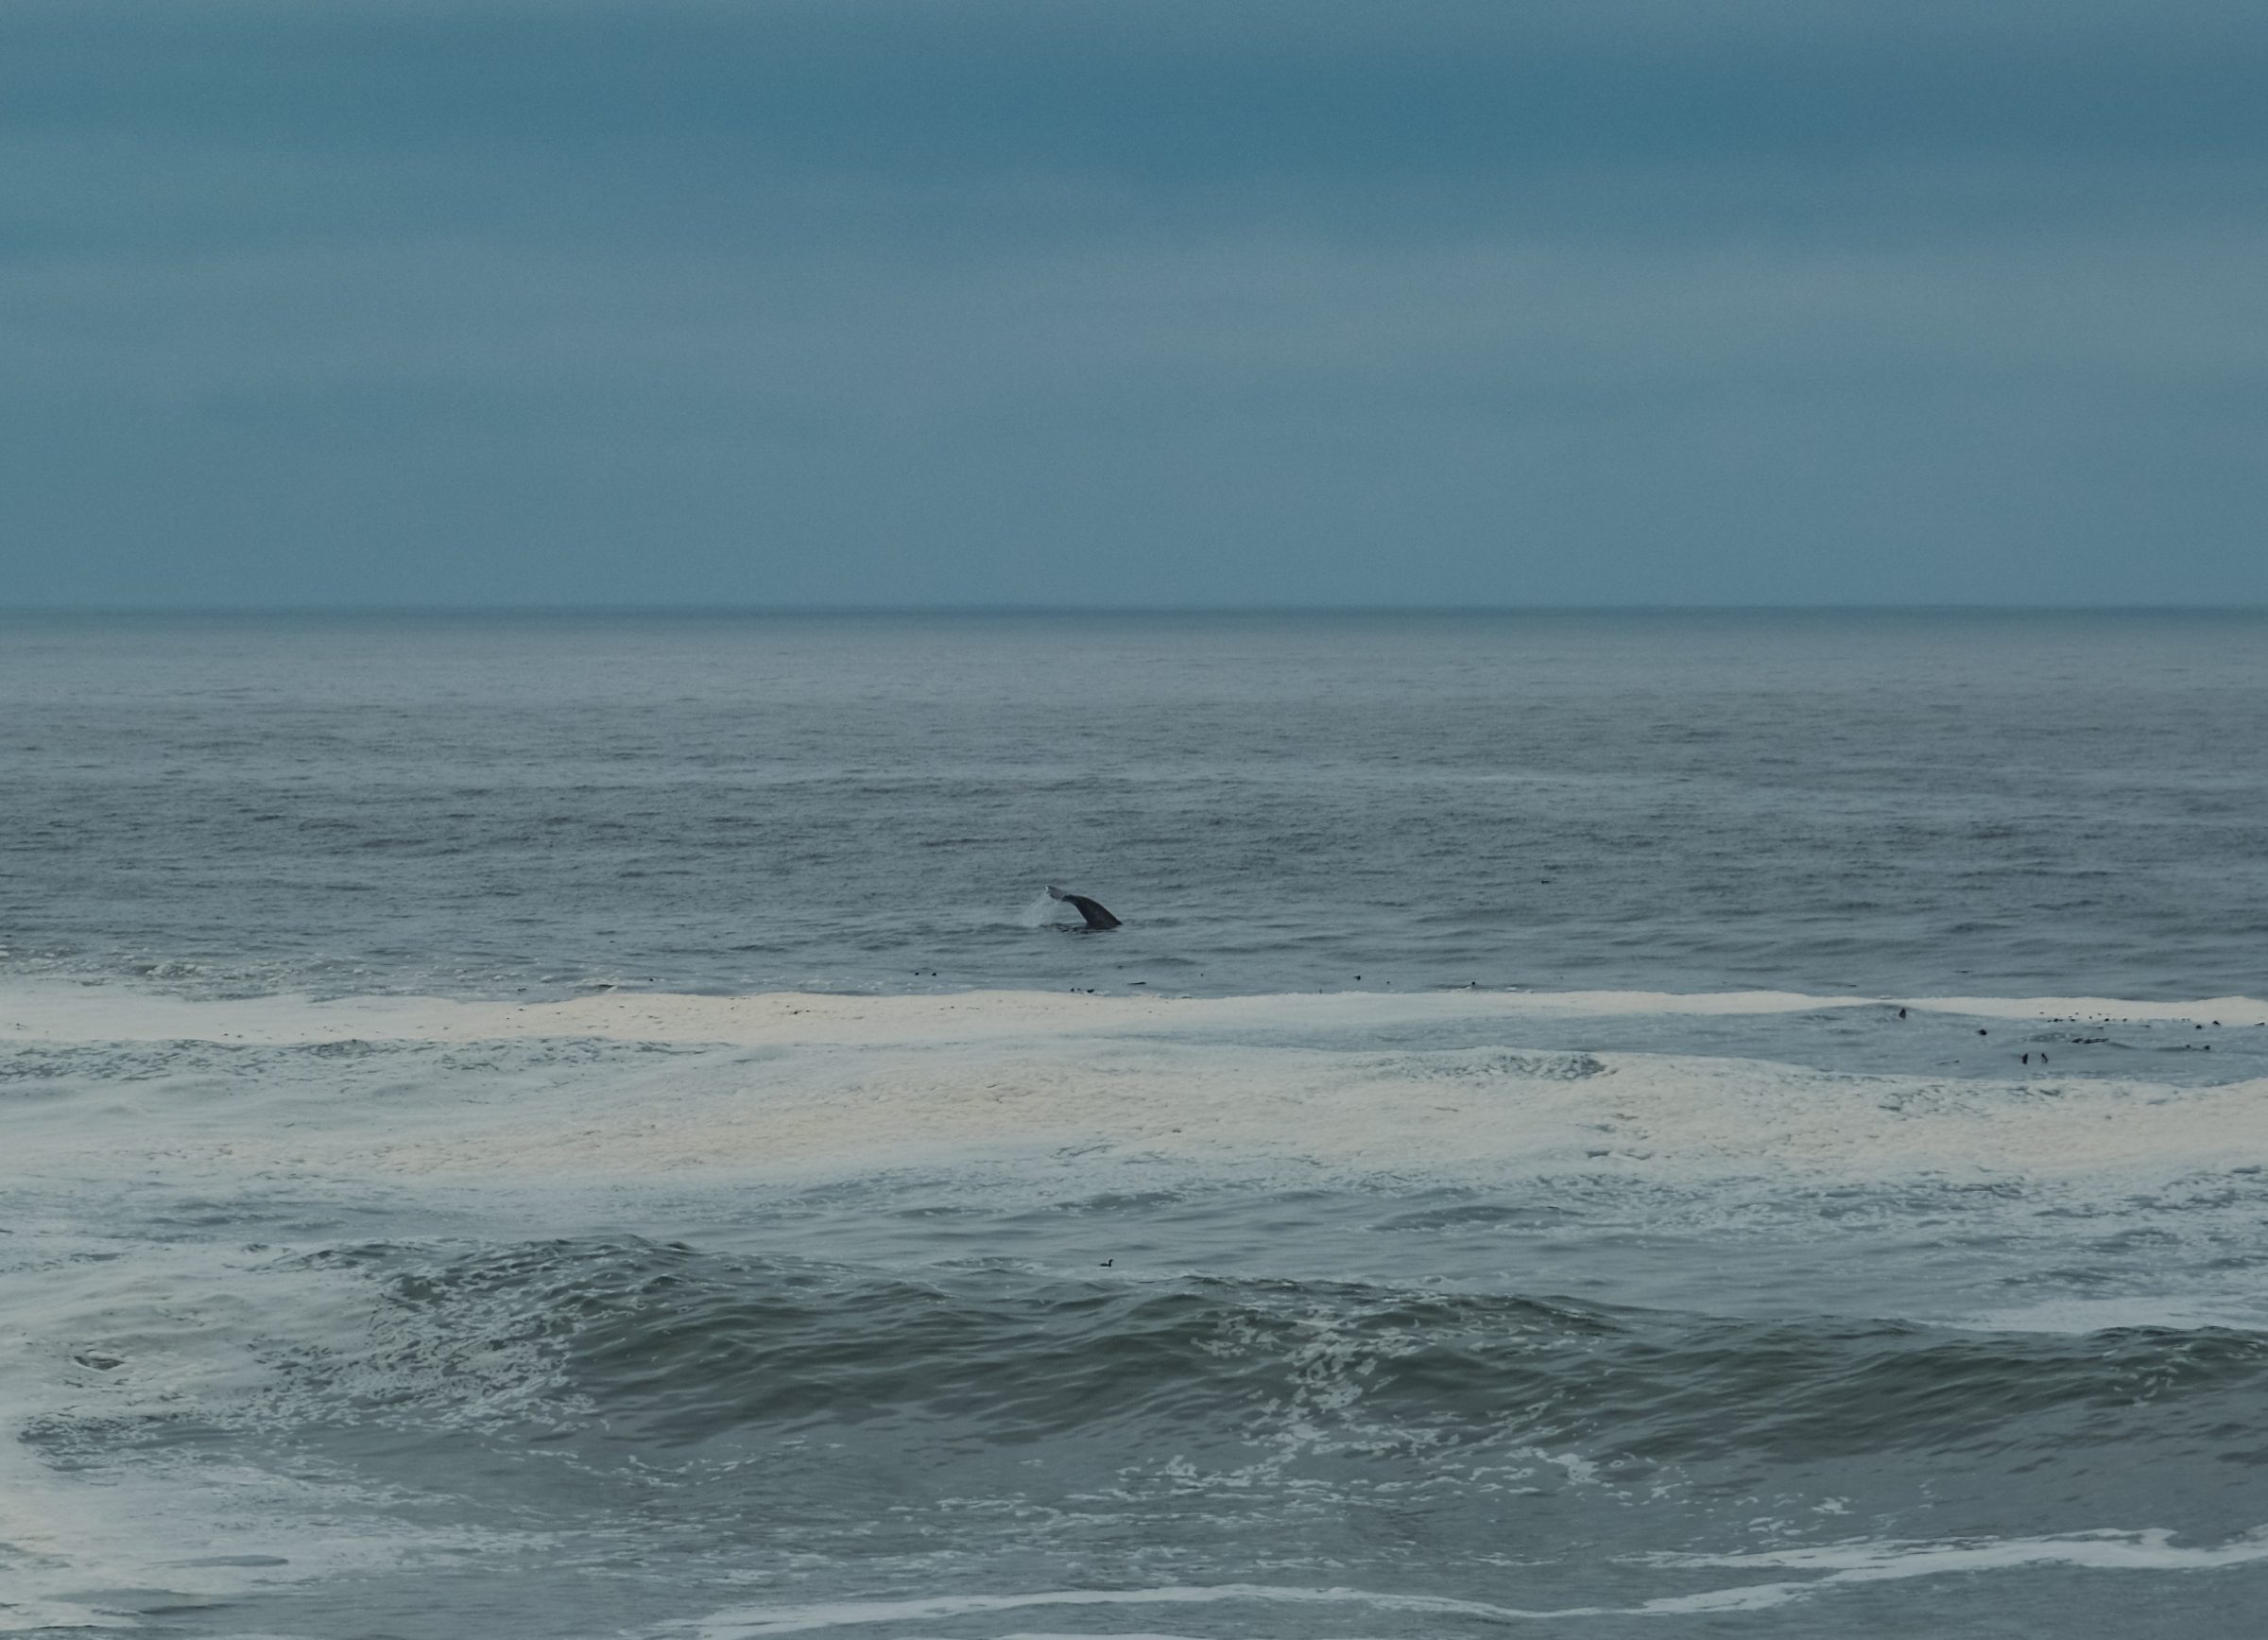 Ogon wieloryba w stanie Waszyngton na zachodnim wybrzeżu Ameryki